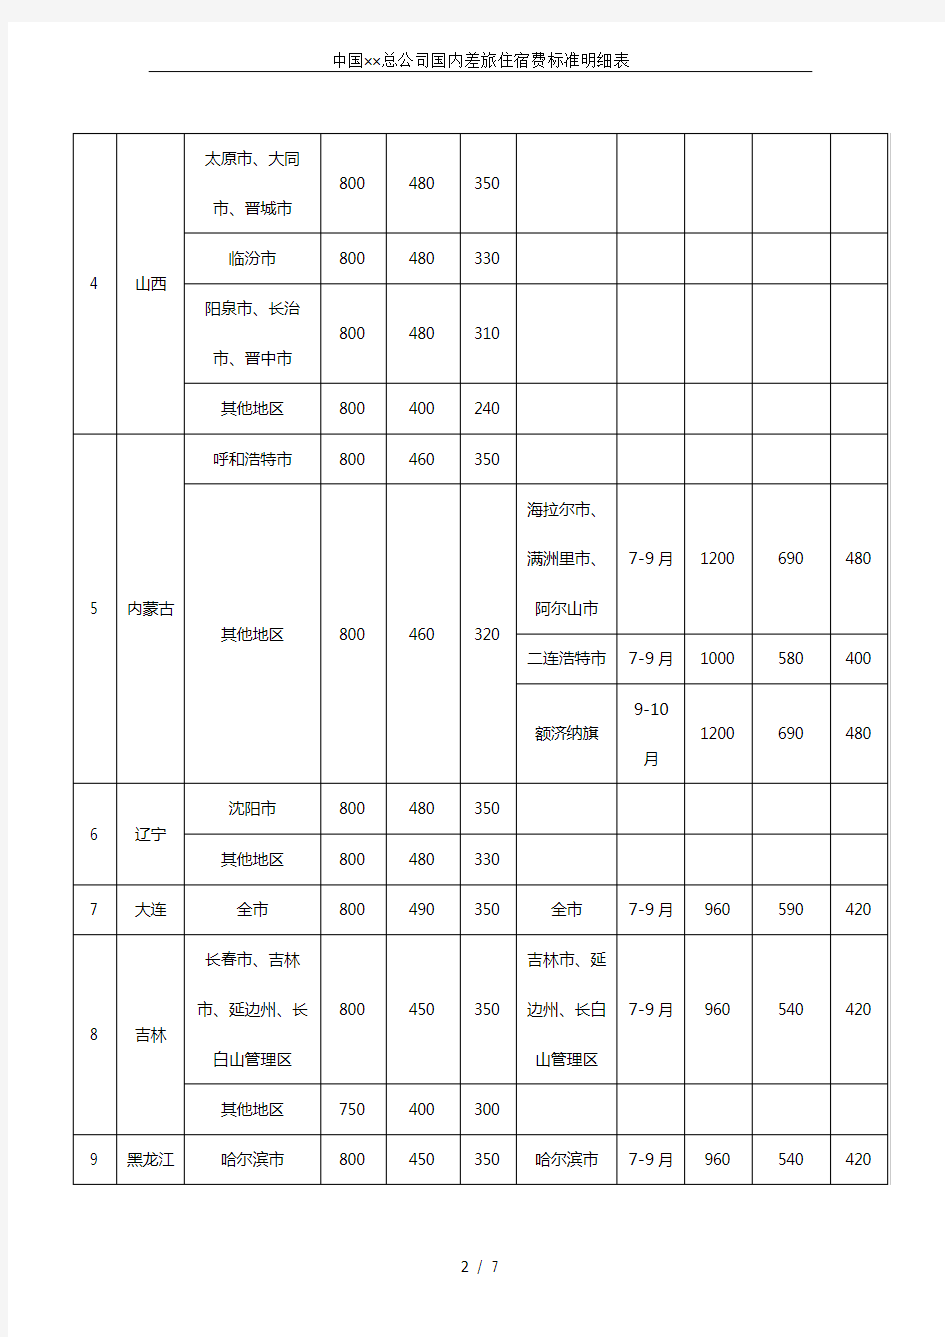 中国××总公司国内差旅住宿费标准明细表